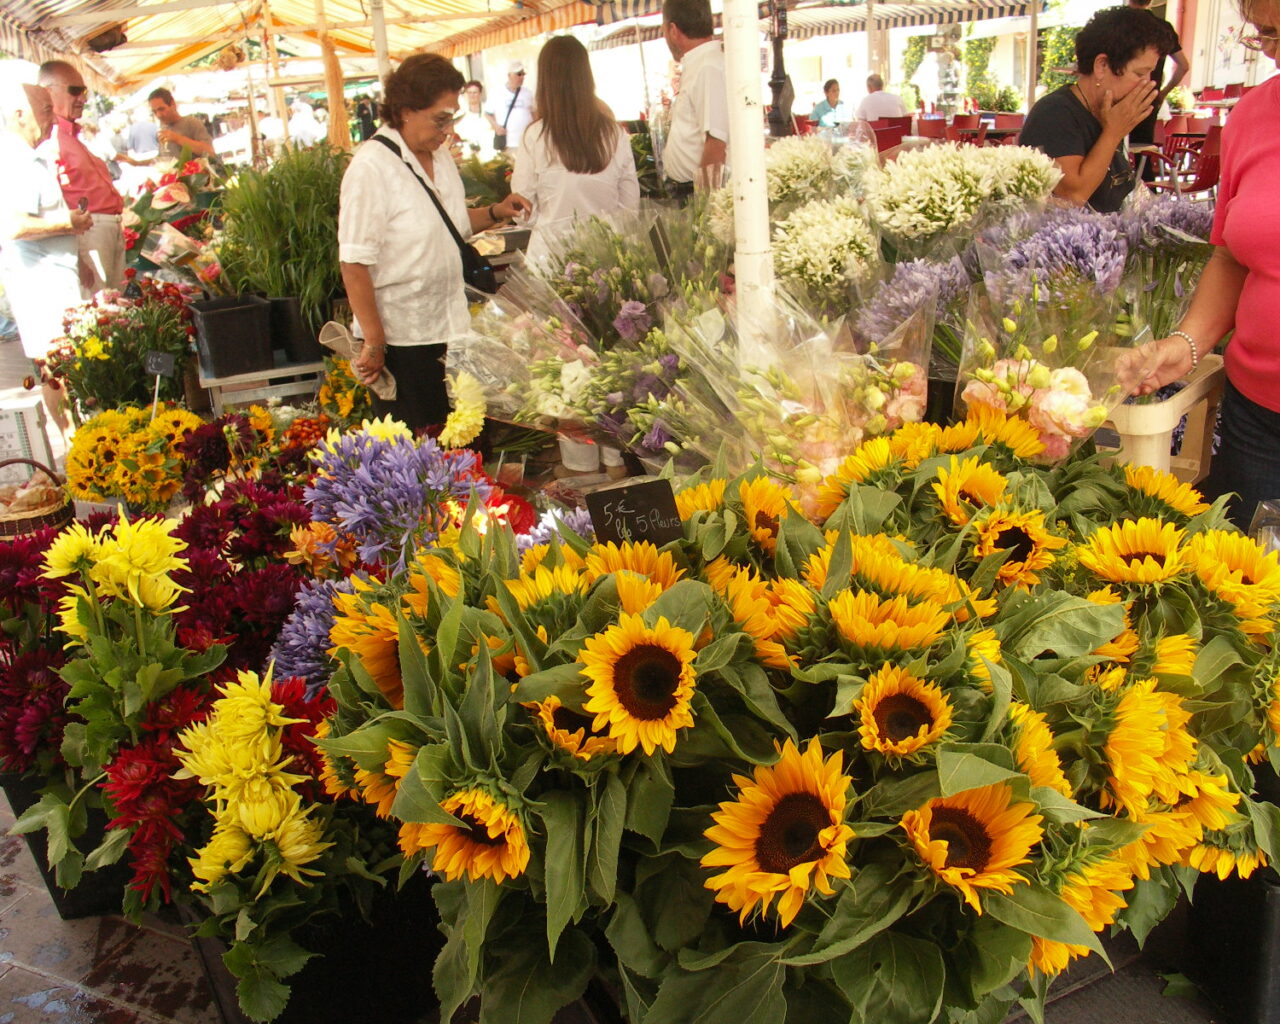 10 Le Cours Saleya où chaque jour s'y tient le célèbre marché aux fleurs